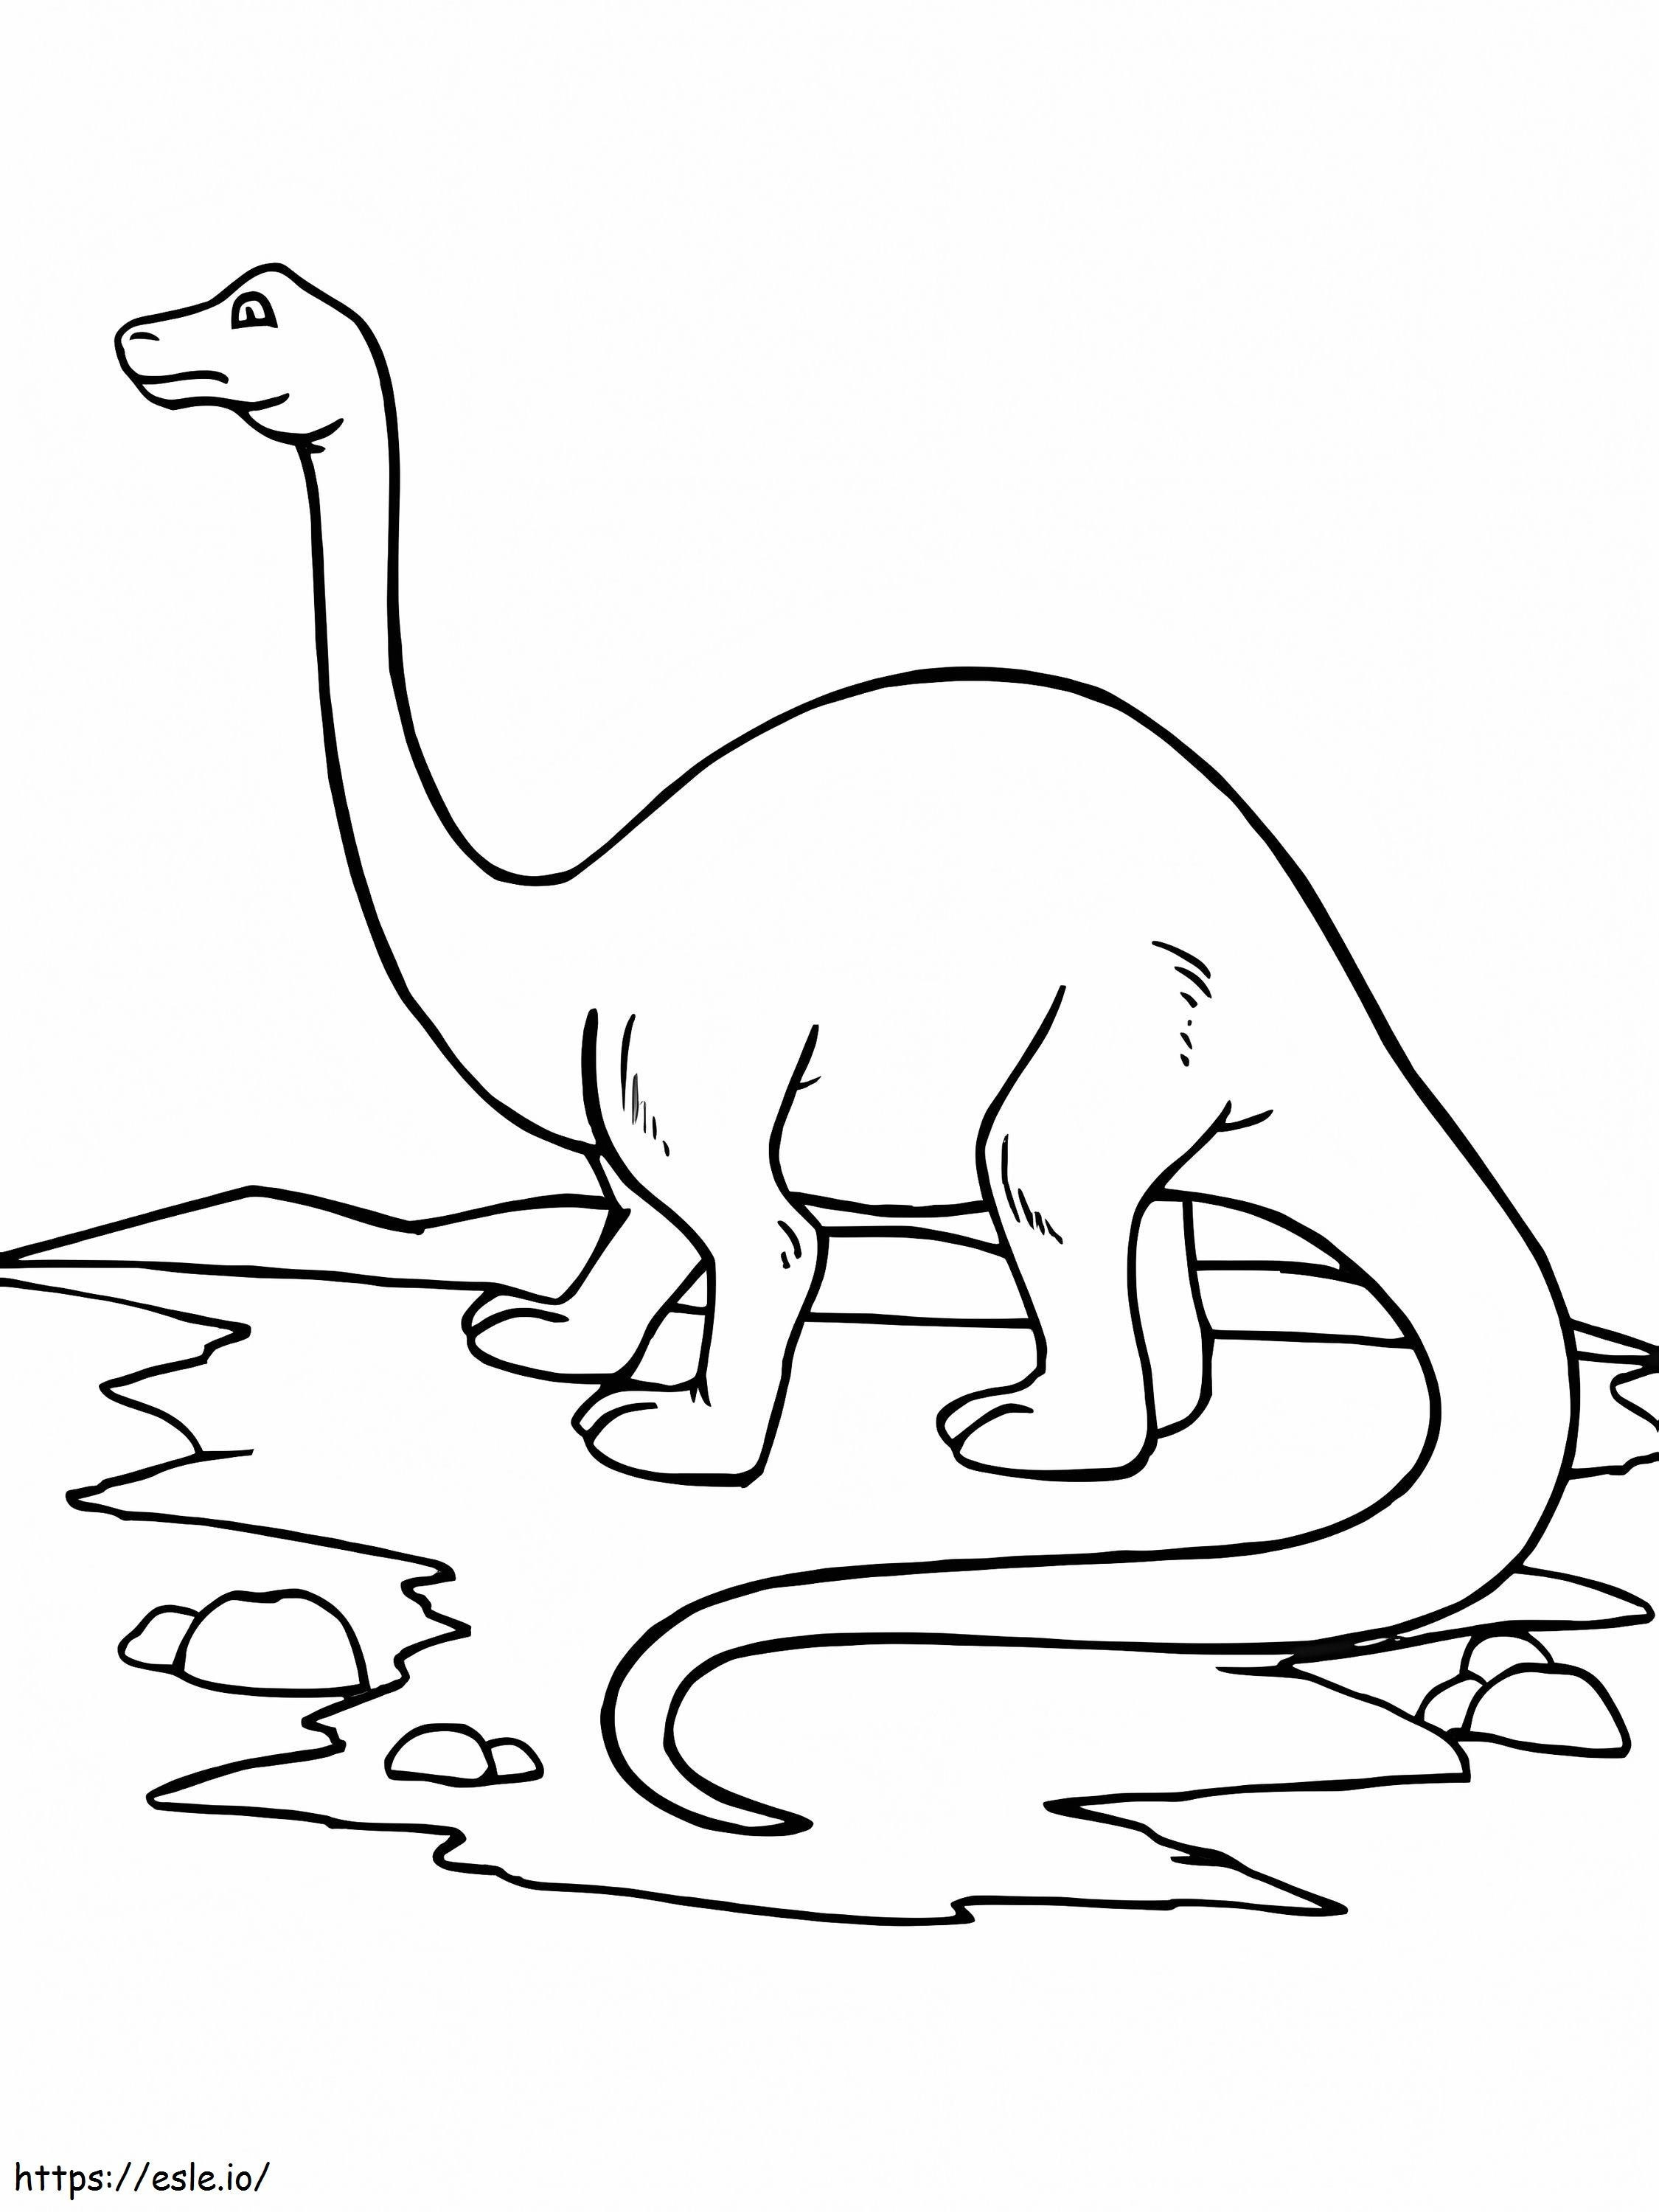 Brontozaur W Wodzie kolorowanka